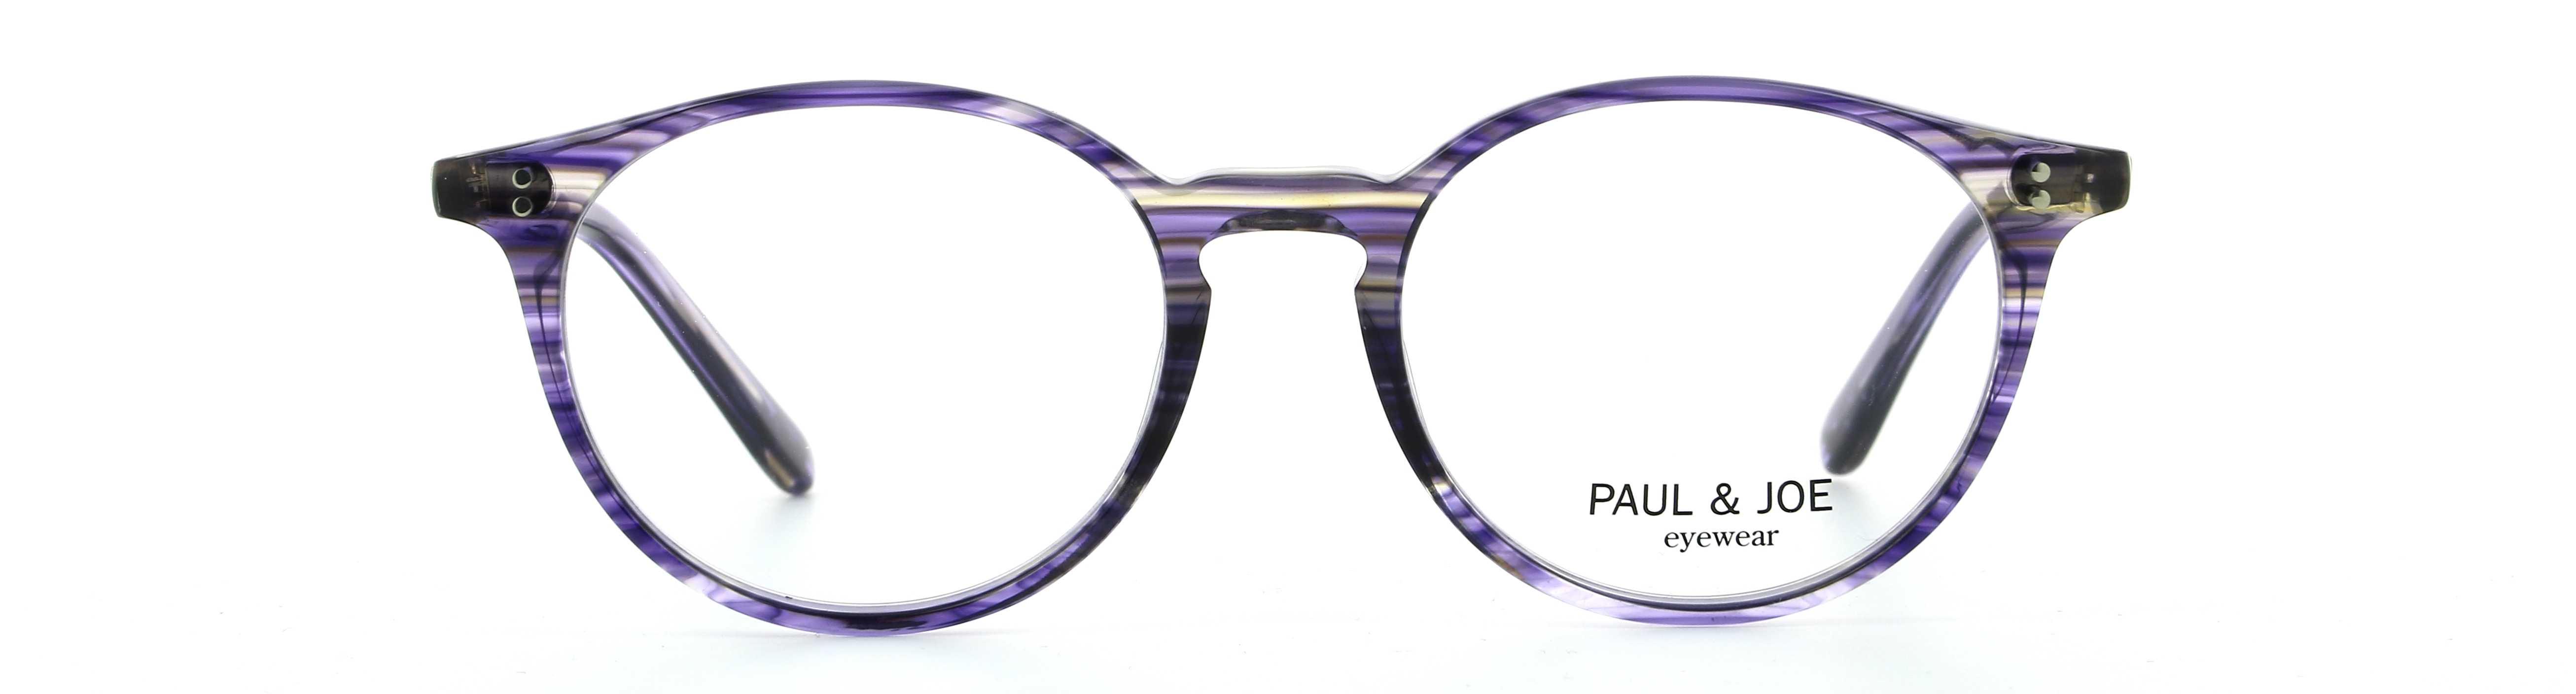 Eyeglasses PJ AZURE03 E401 48/17 PAUL & JOE